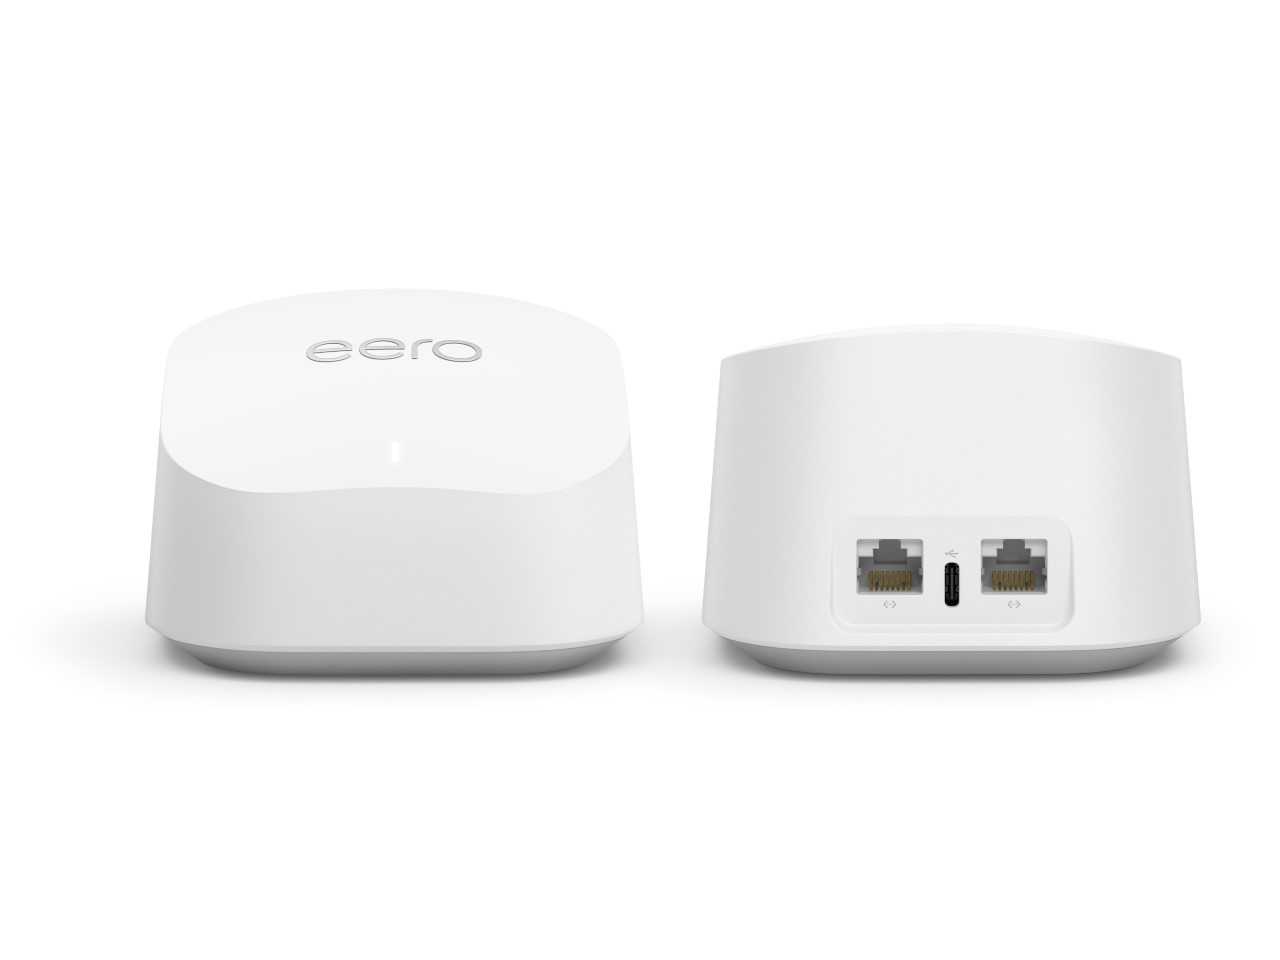 Amazon: present eero Pro 6E ed eero 6+